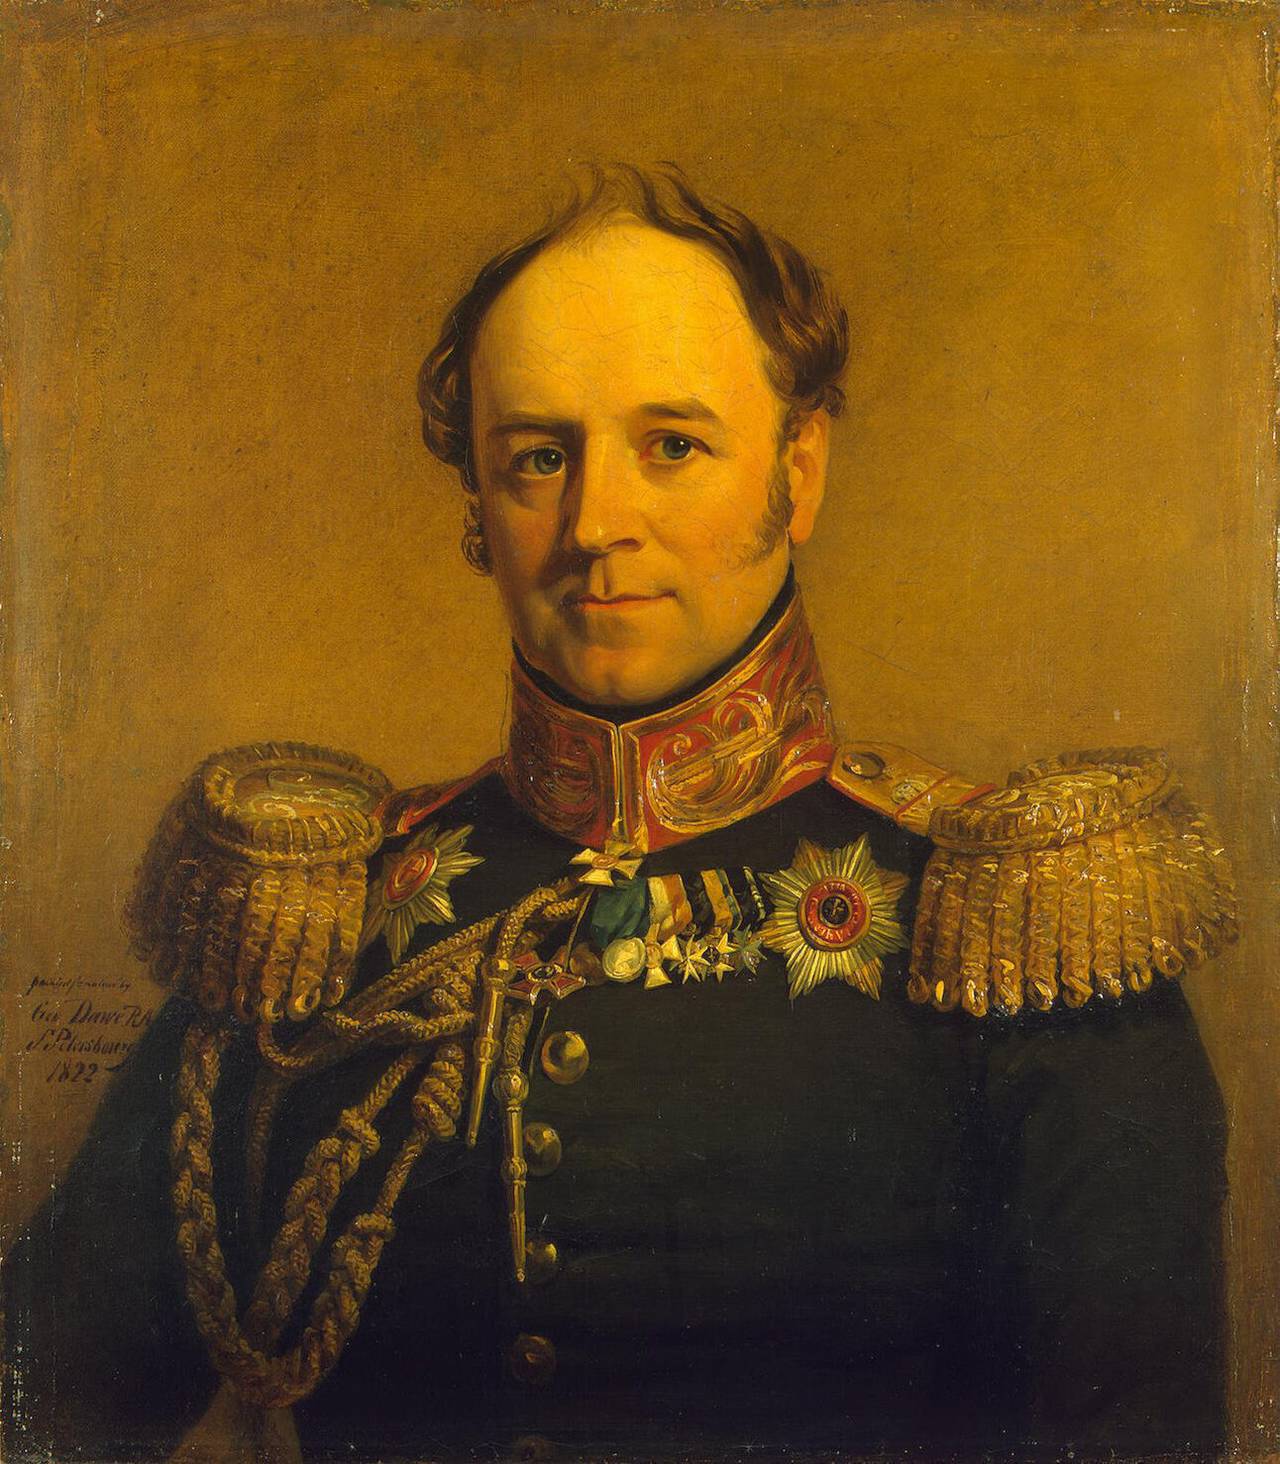 الکساندر کریستوفوروویچ بنکندورف - افسر فوق العاده روسی، قهرمان جنگ 1812